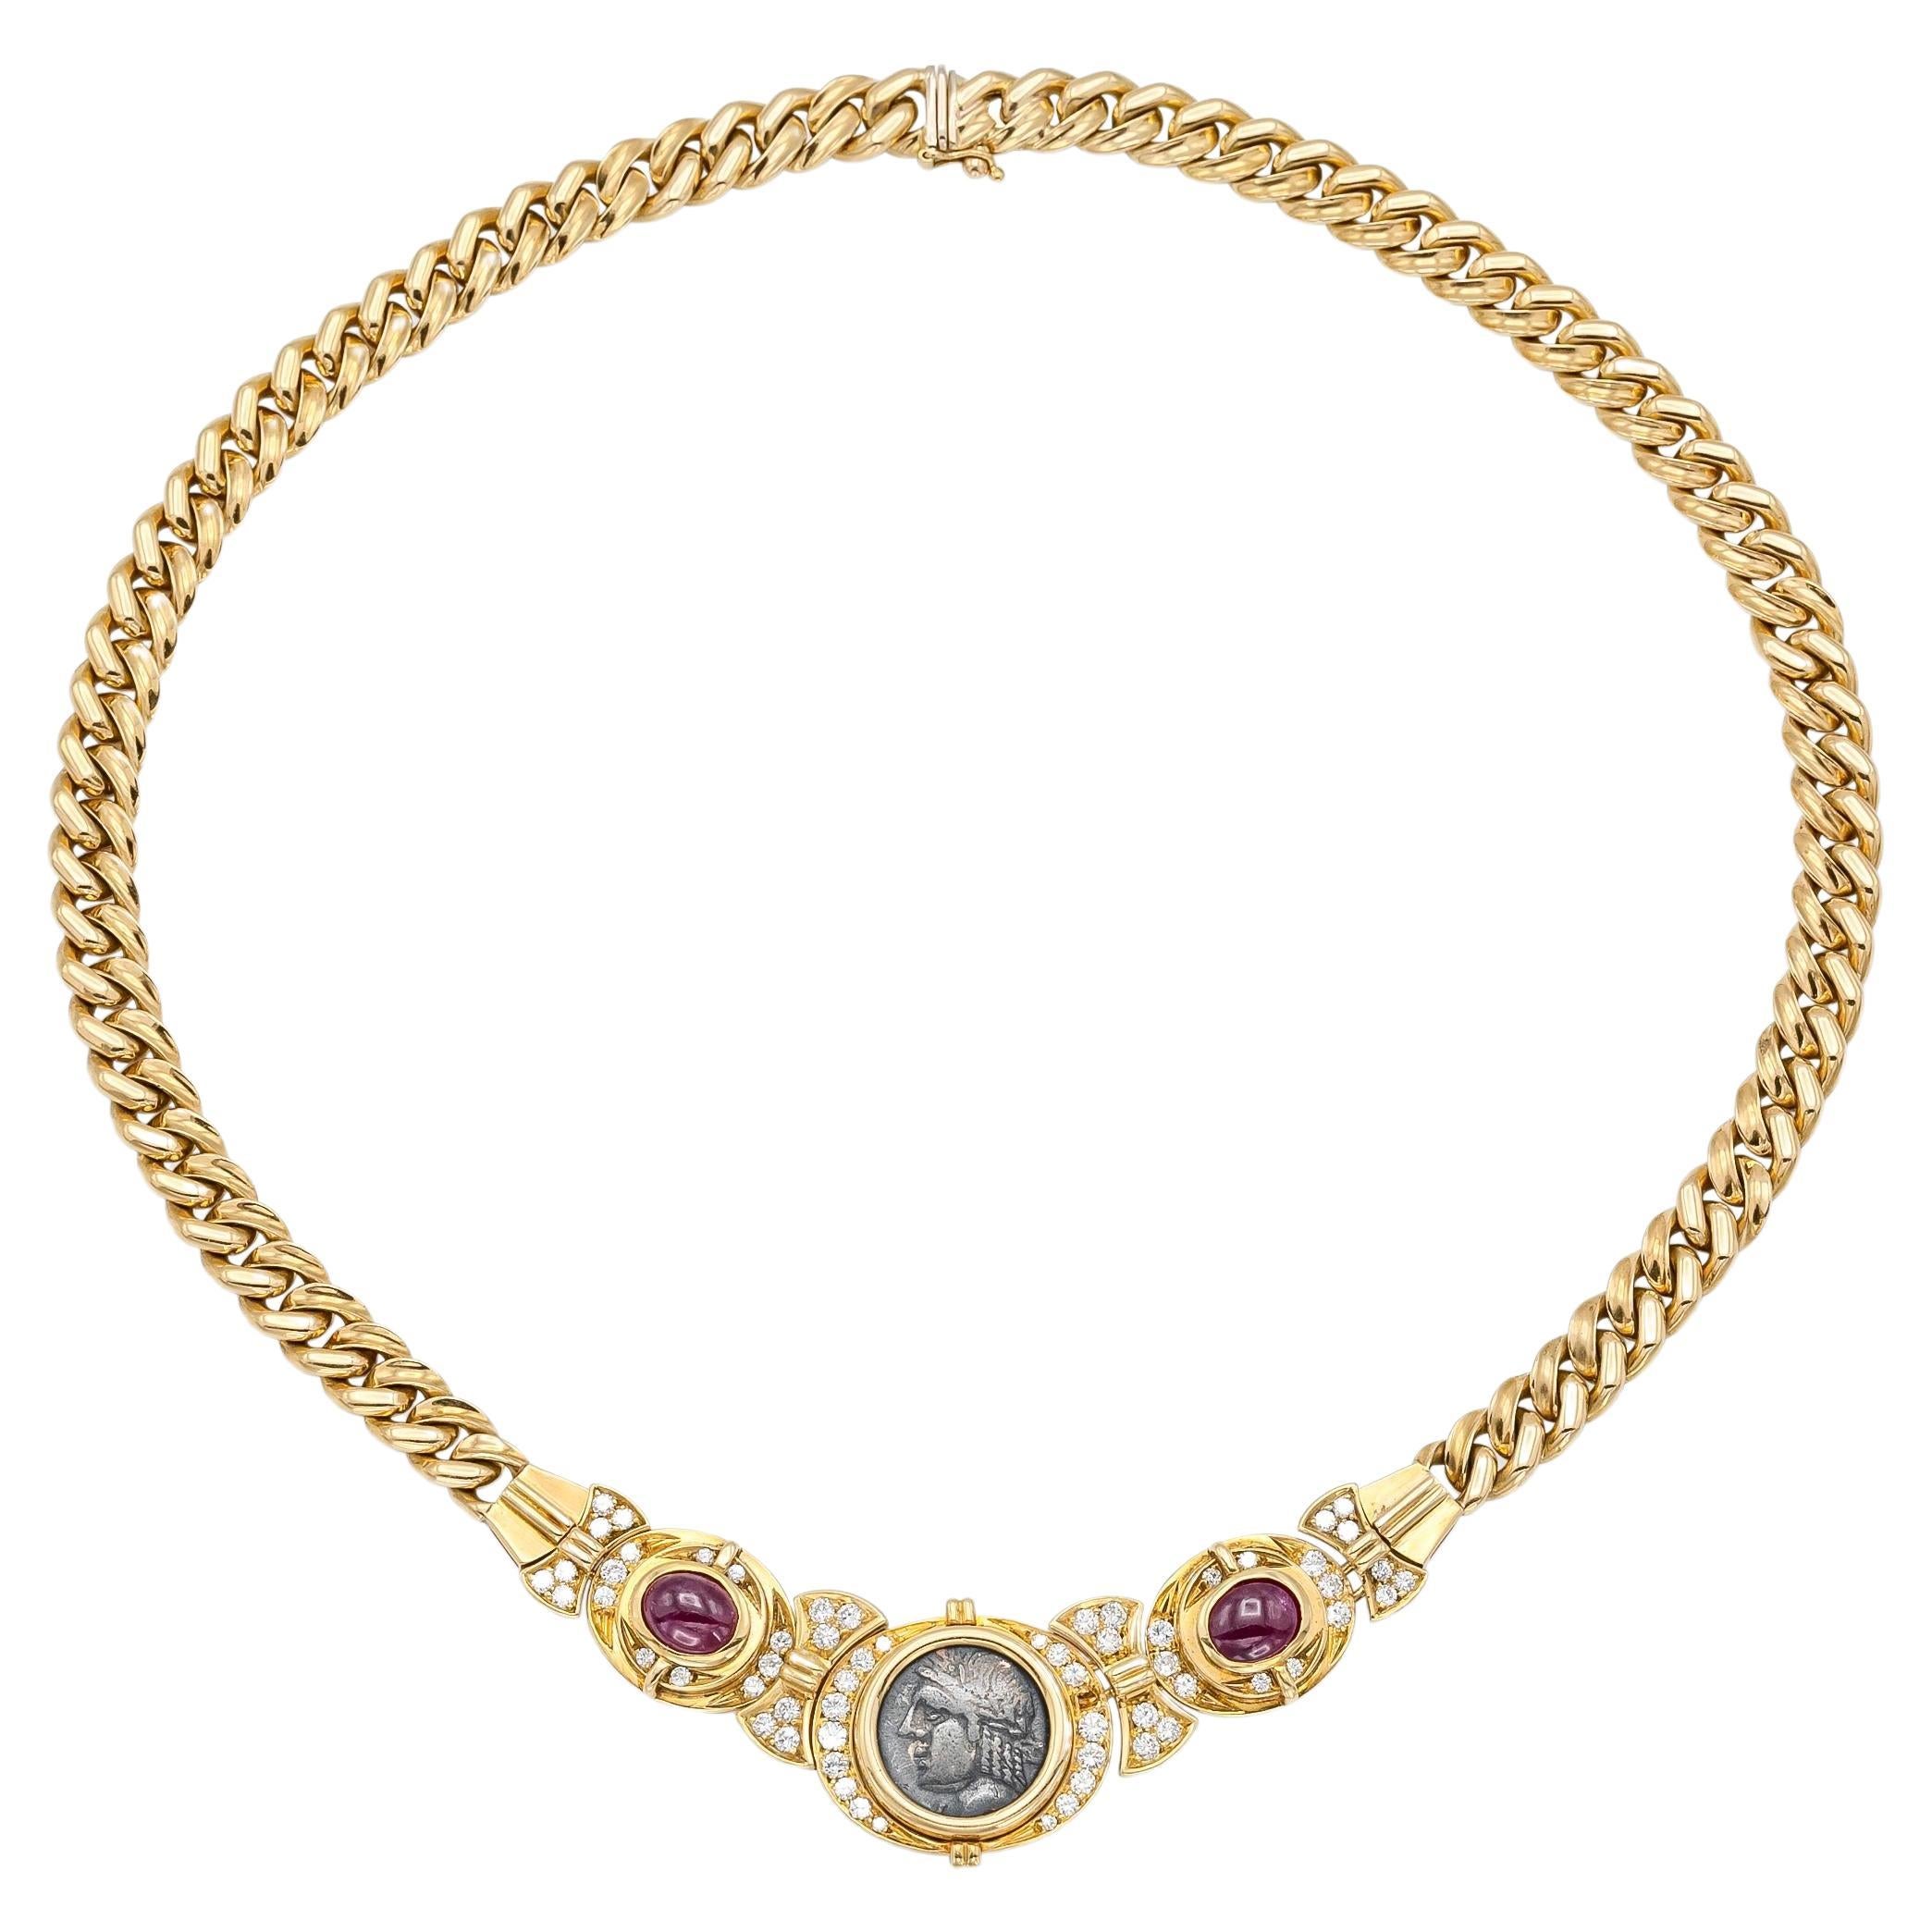 Vintage 1970er Jahre Bvlgari Monete römische Münze Halskette mit Rubinen und Diamanten